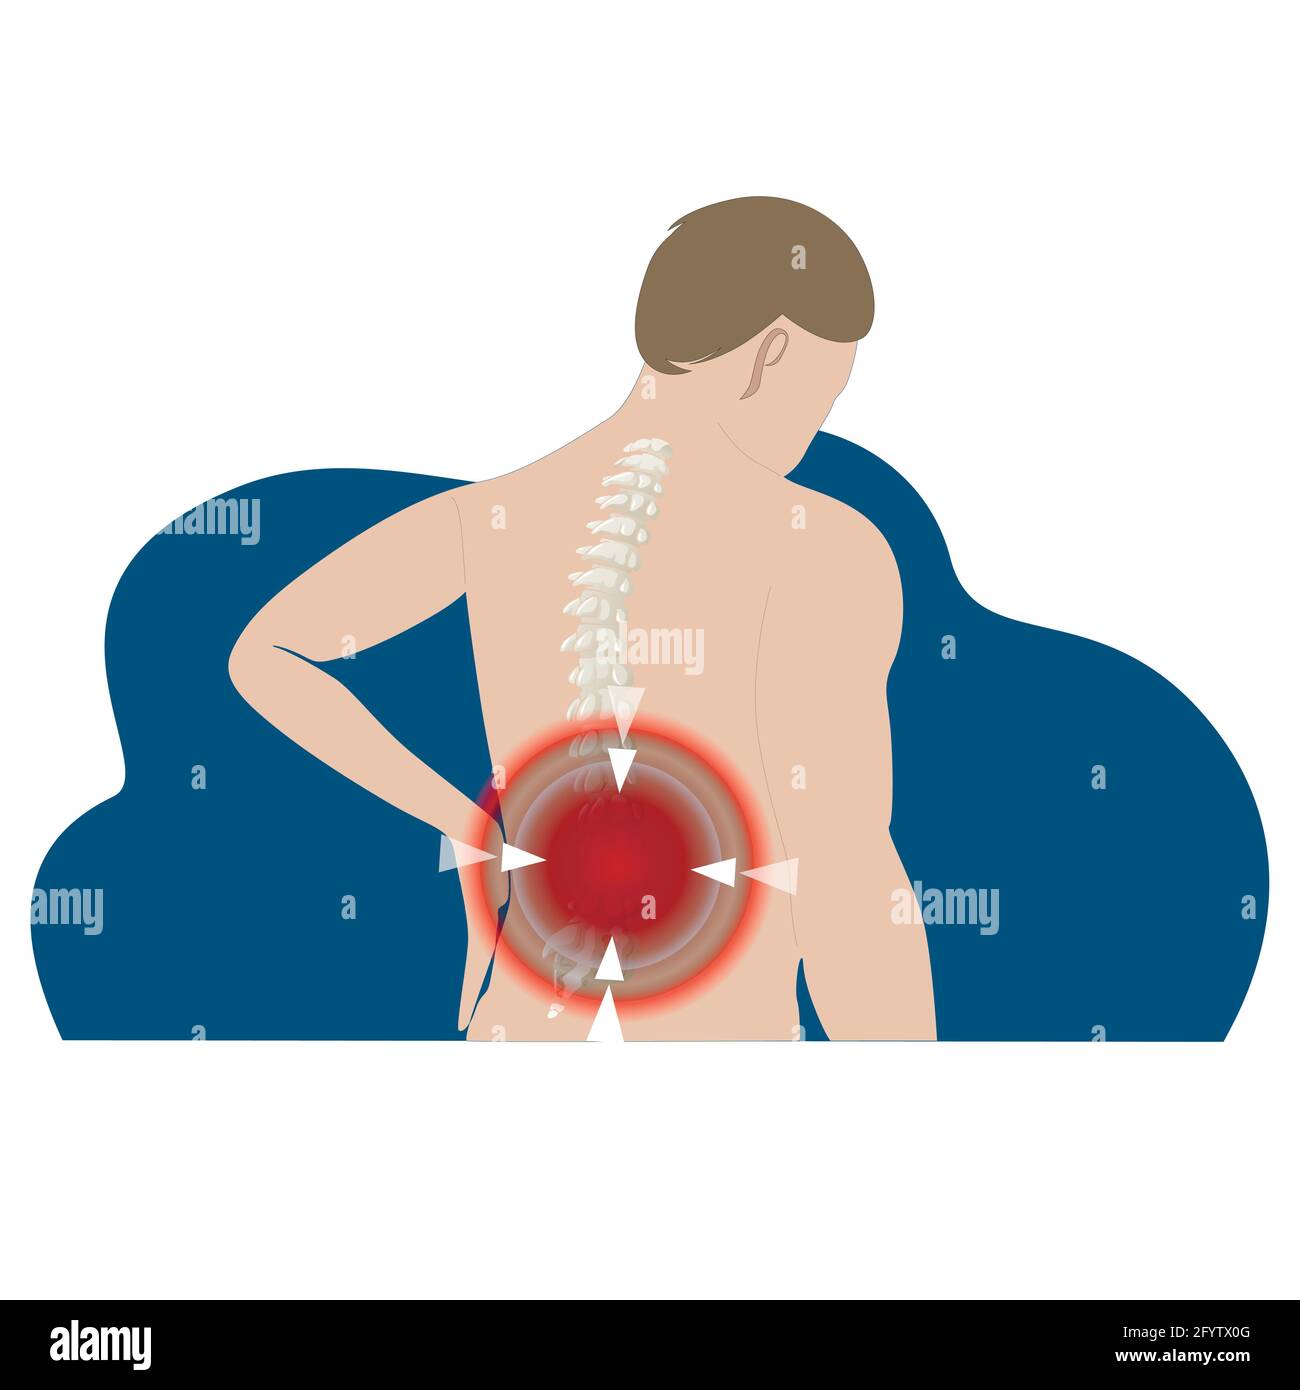 Sirve la manta eléctrica para el dolor de espalda? - Blog de CIM Formación